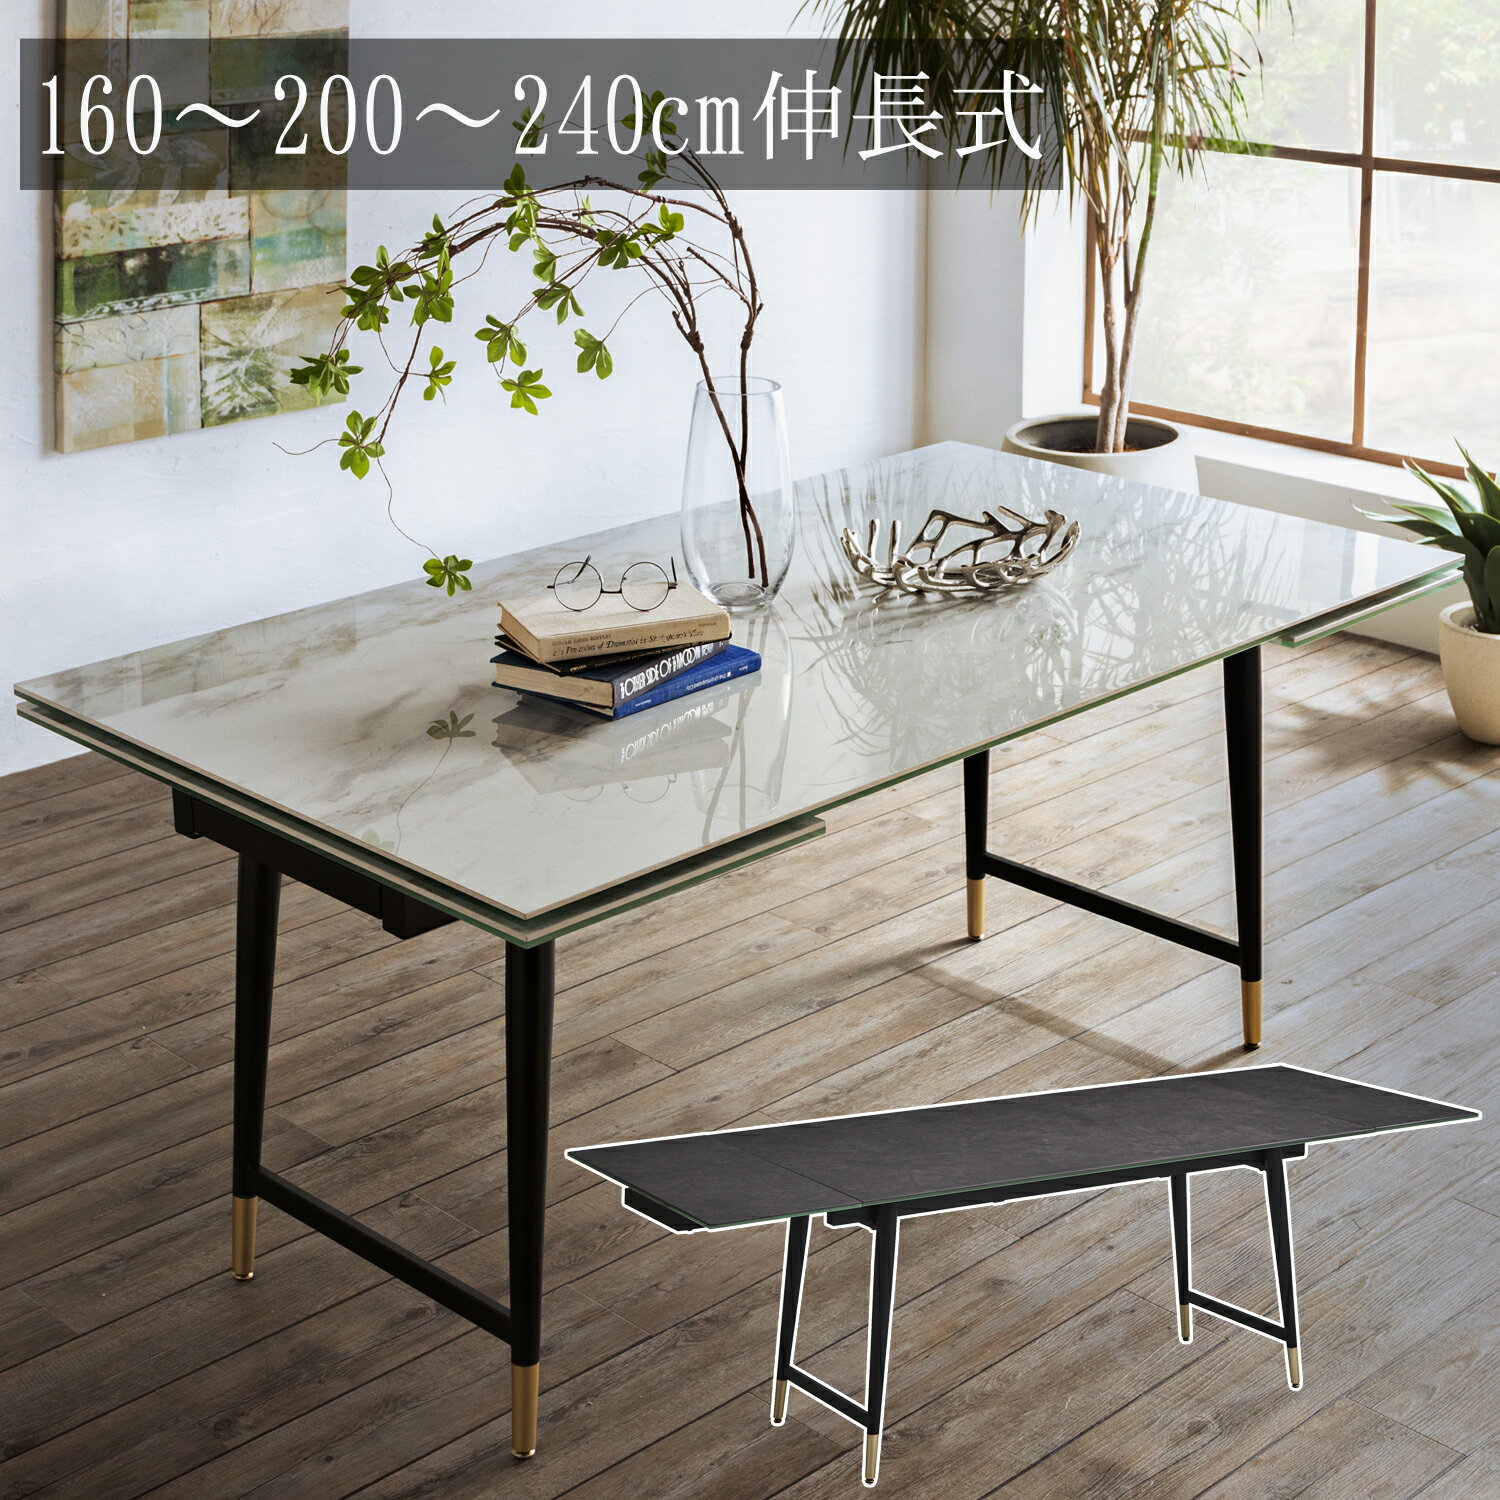  幅160cm 〜 幅200cm 〜 幅240cm 伸長式 セラミックテーブル 単品 テーブル セラミック 長方形テーブル ダイニングテーブル セラミック天板 食卓テーブル